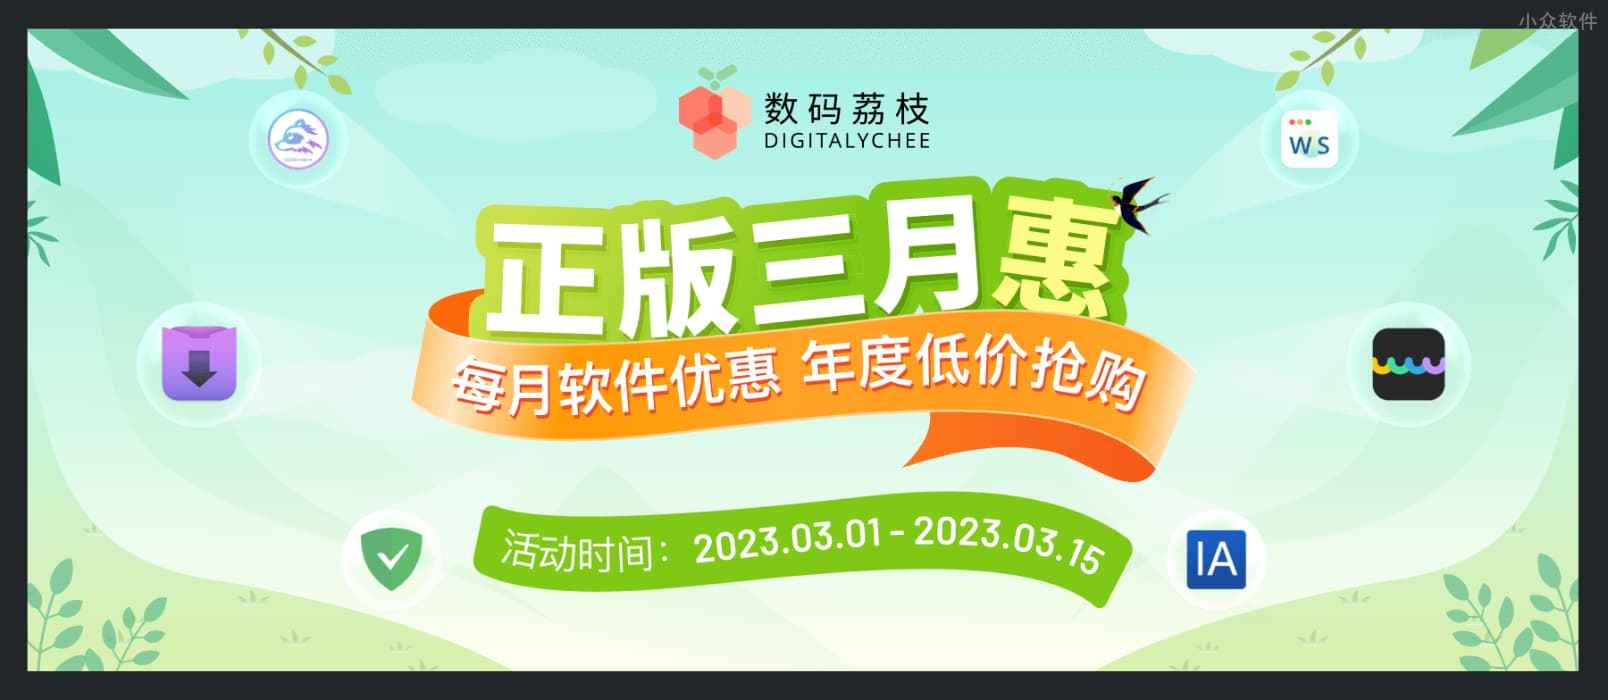 数码荔枝 3 月正版软件优惠：Downie、UPDF、Office 等 7 折起 1